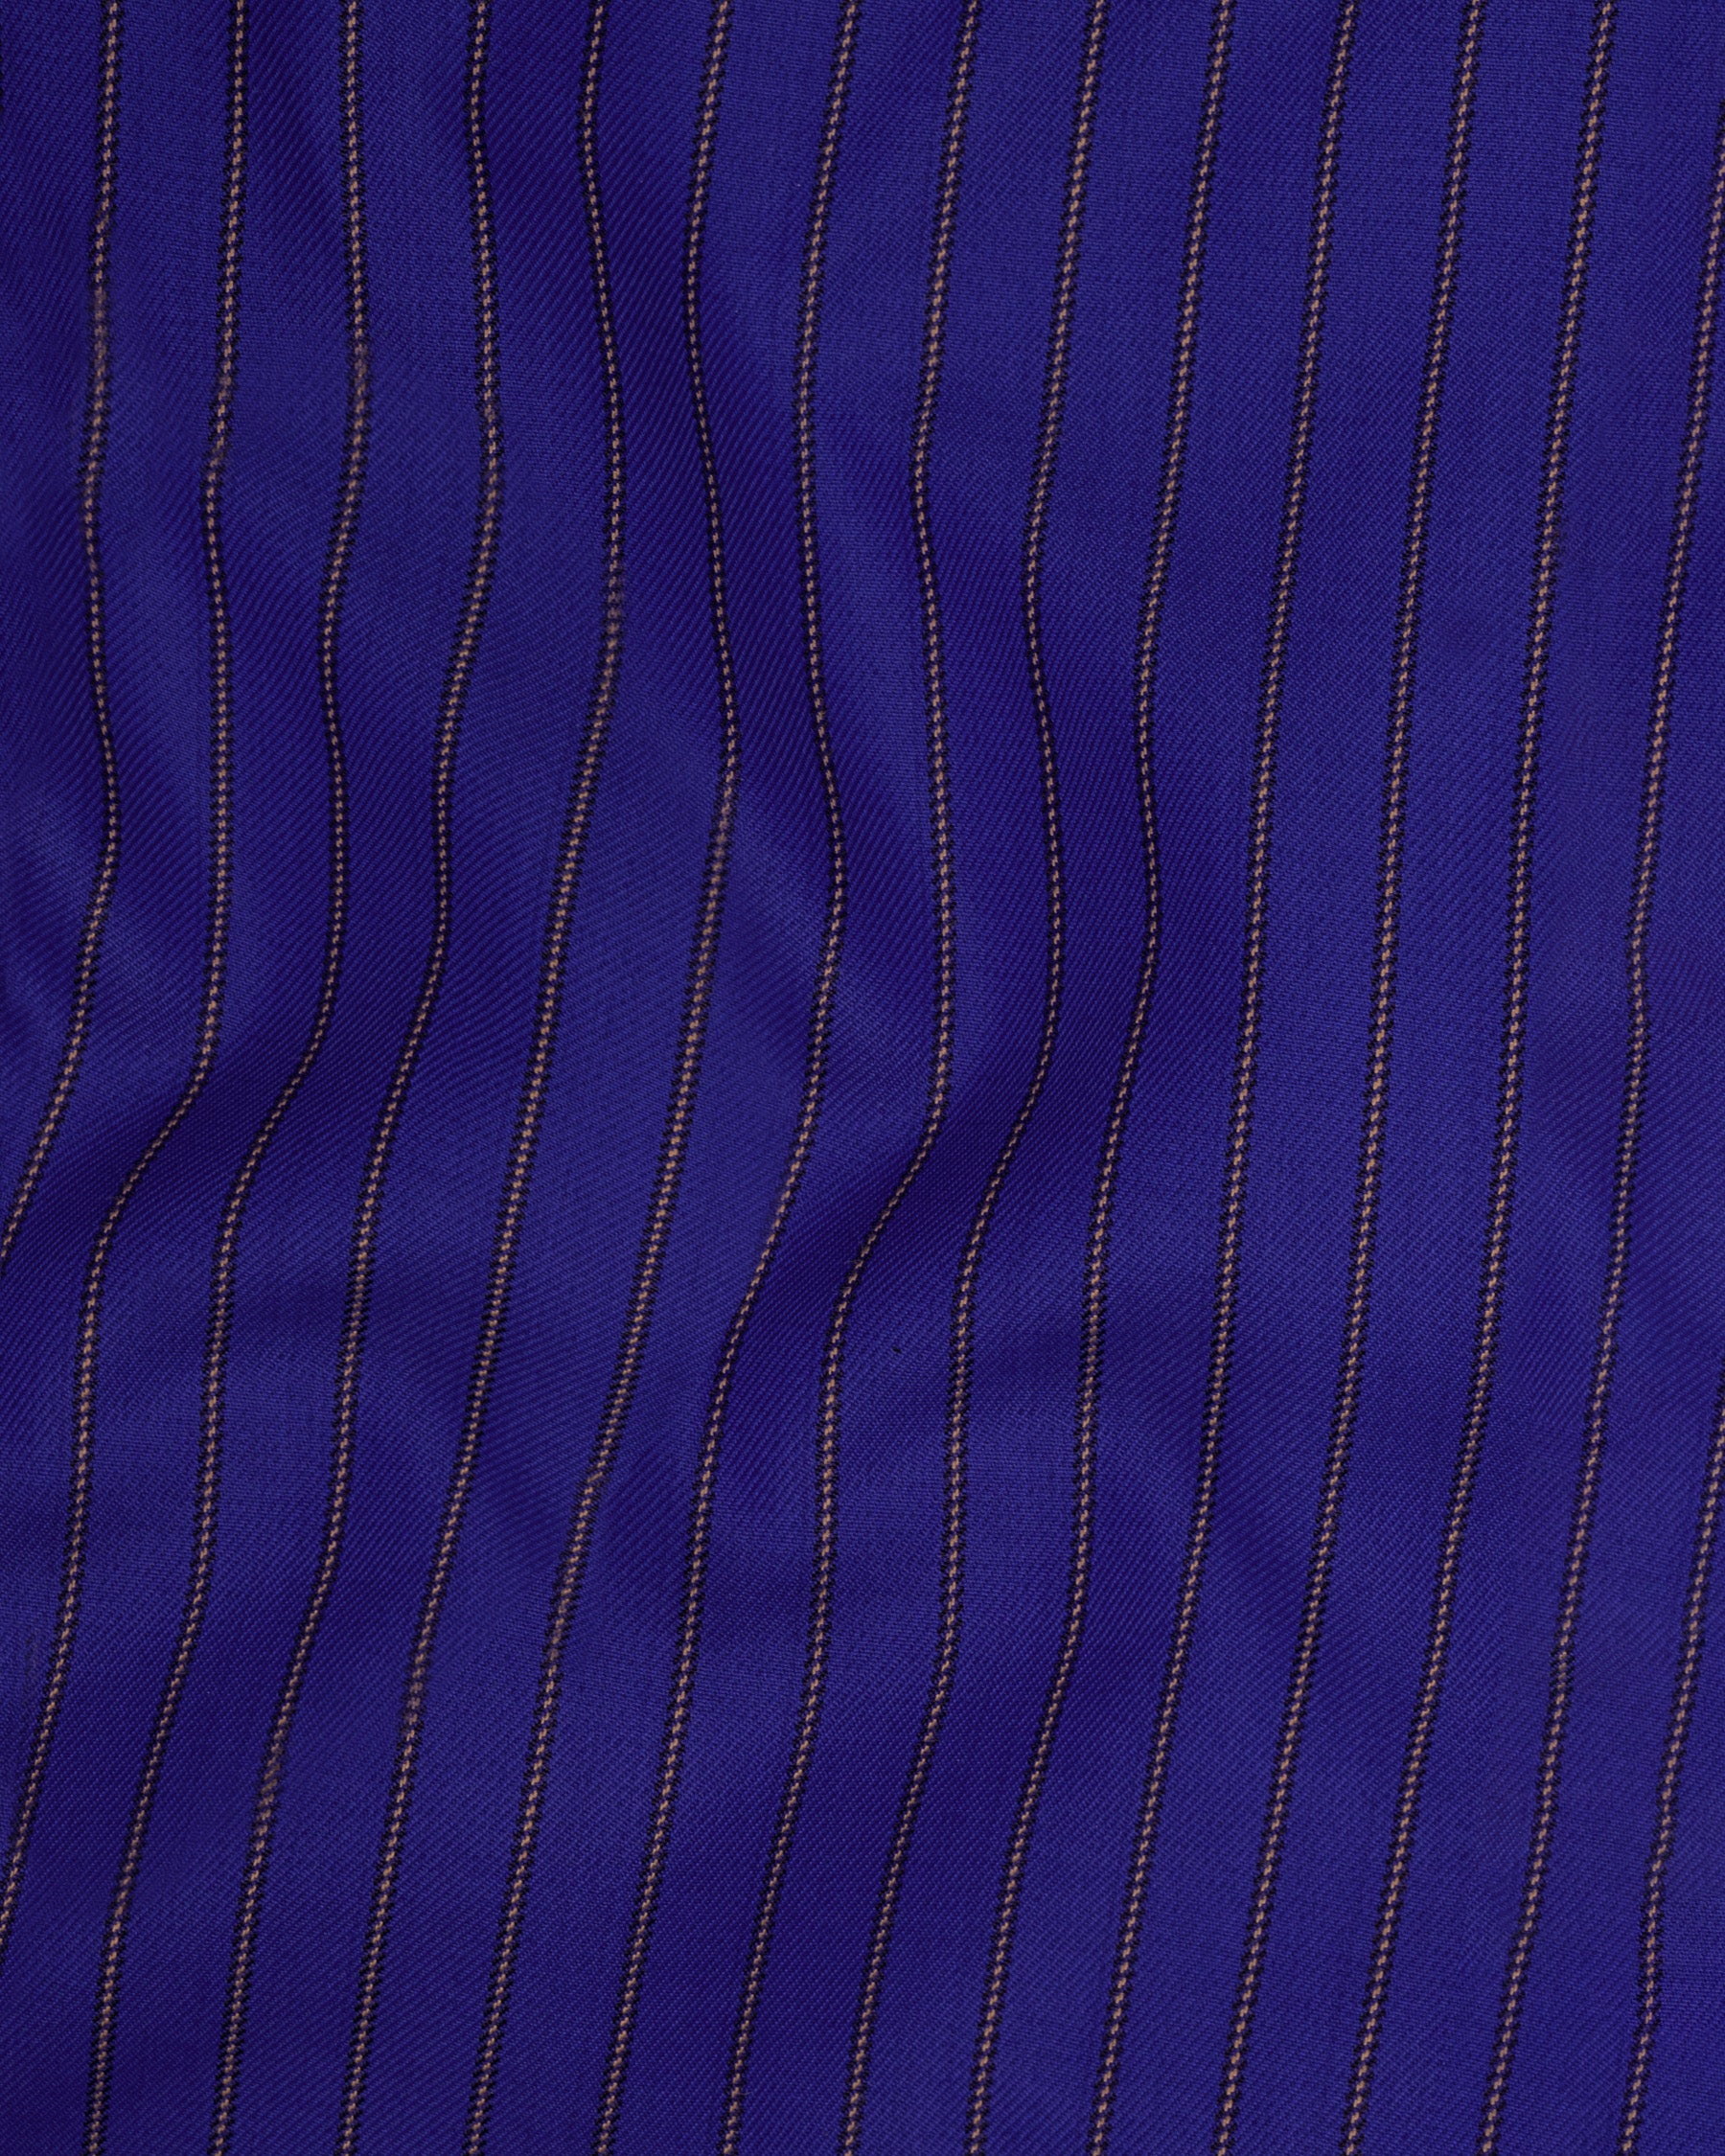 Violet Striped Wool Rich Waistcoat V1502-36, V1502-38, V1502-40, V1502-42, V1502-44, V1502-46, V1502-48, V1502-50, V1502-52, V1502-54, V1502-56, V1502-58, V1502-60